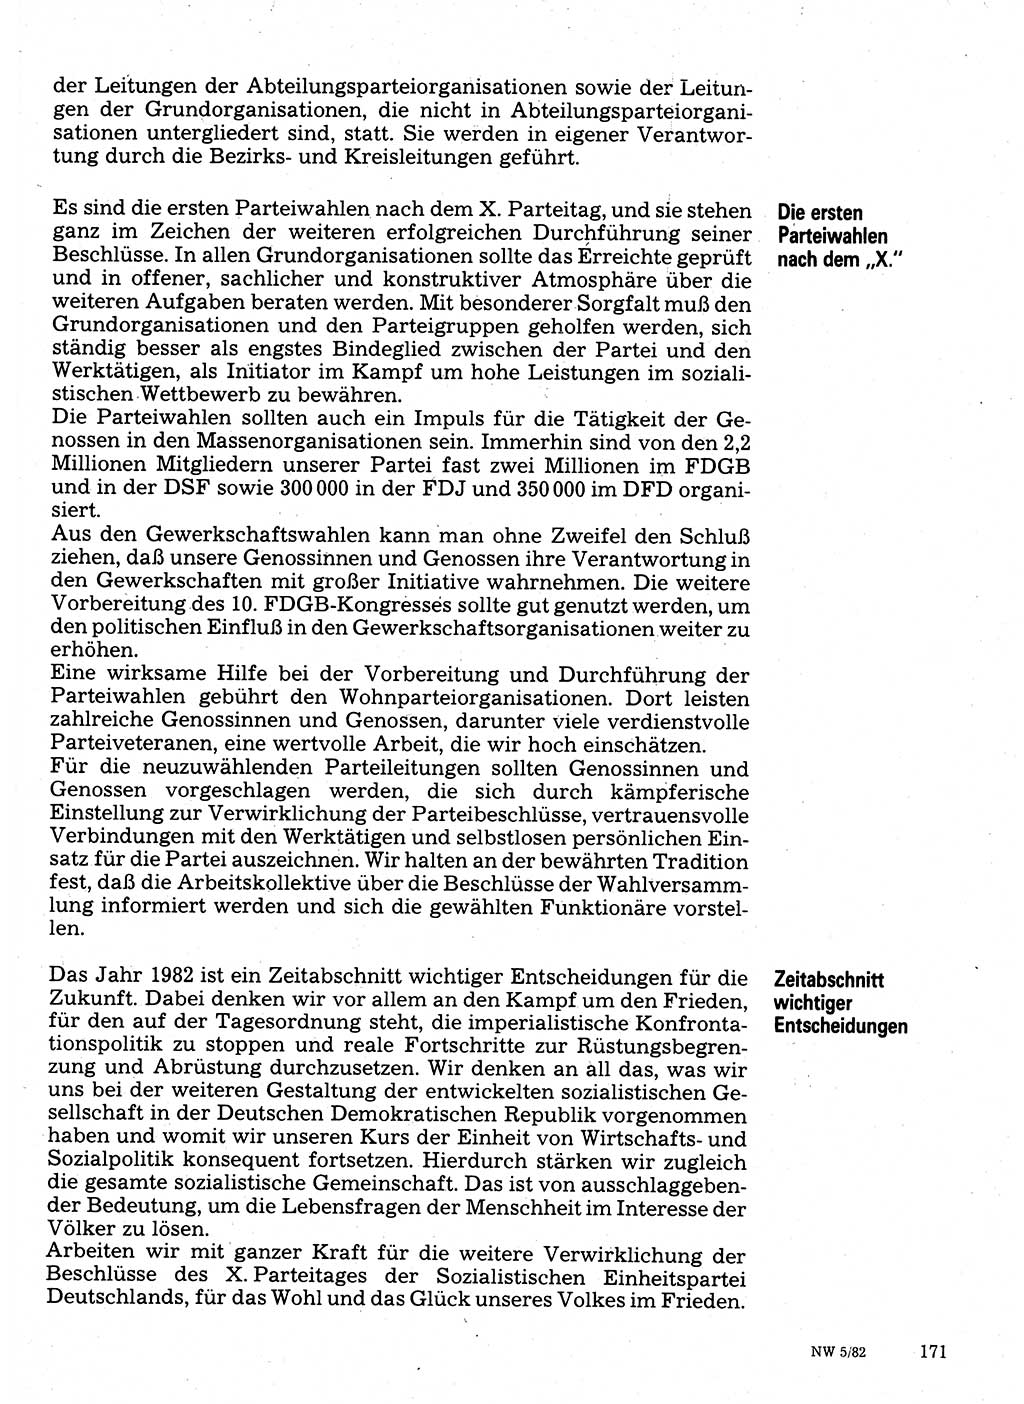 Neuer Weg (NW), Organ des Zentralkomitees (ZK) der SED (Sozialistische Einheitspartei Deutschlands) für Fragen des Parteilebens, 37. Jahrgang [Deutsche Demokratische Republik (DDR)] 1982, Seite 171 (NW ZK SED DDR 1982, S. 171)